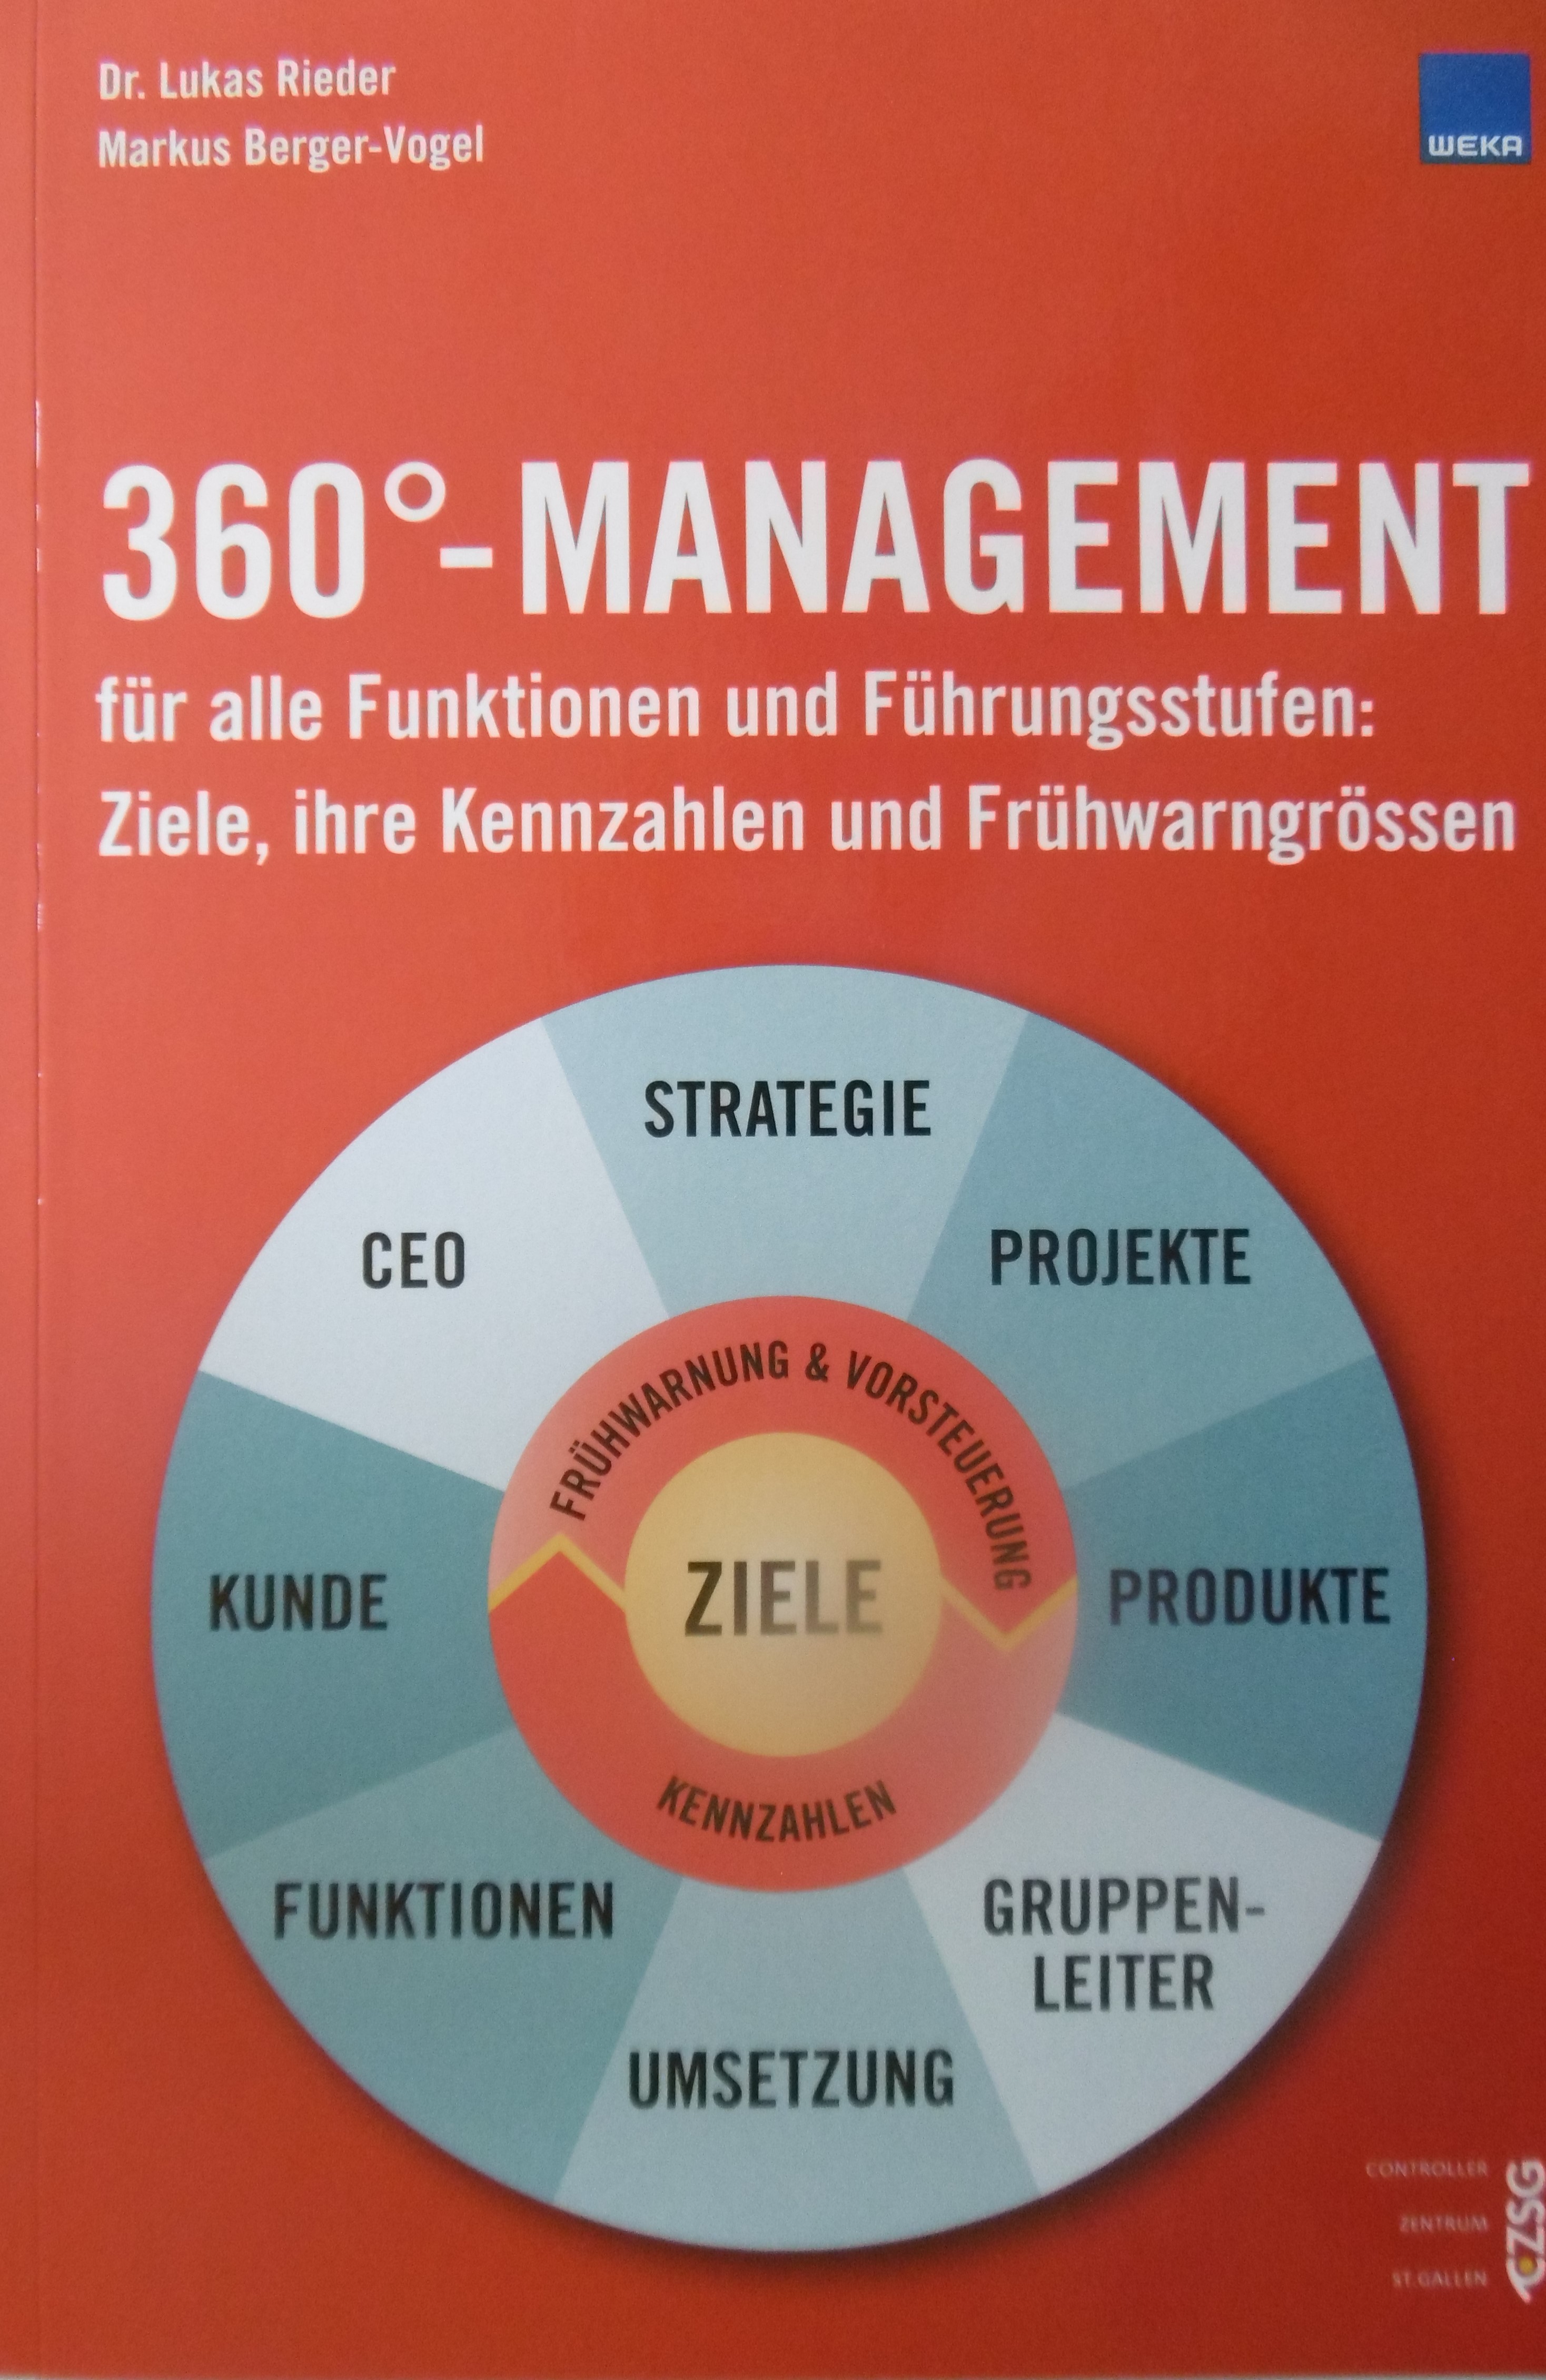 360°-Management für alle Funktionen und Führungsstufen (Paperback)